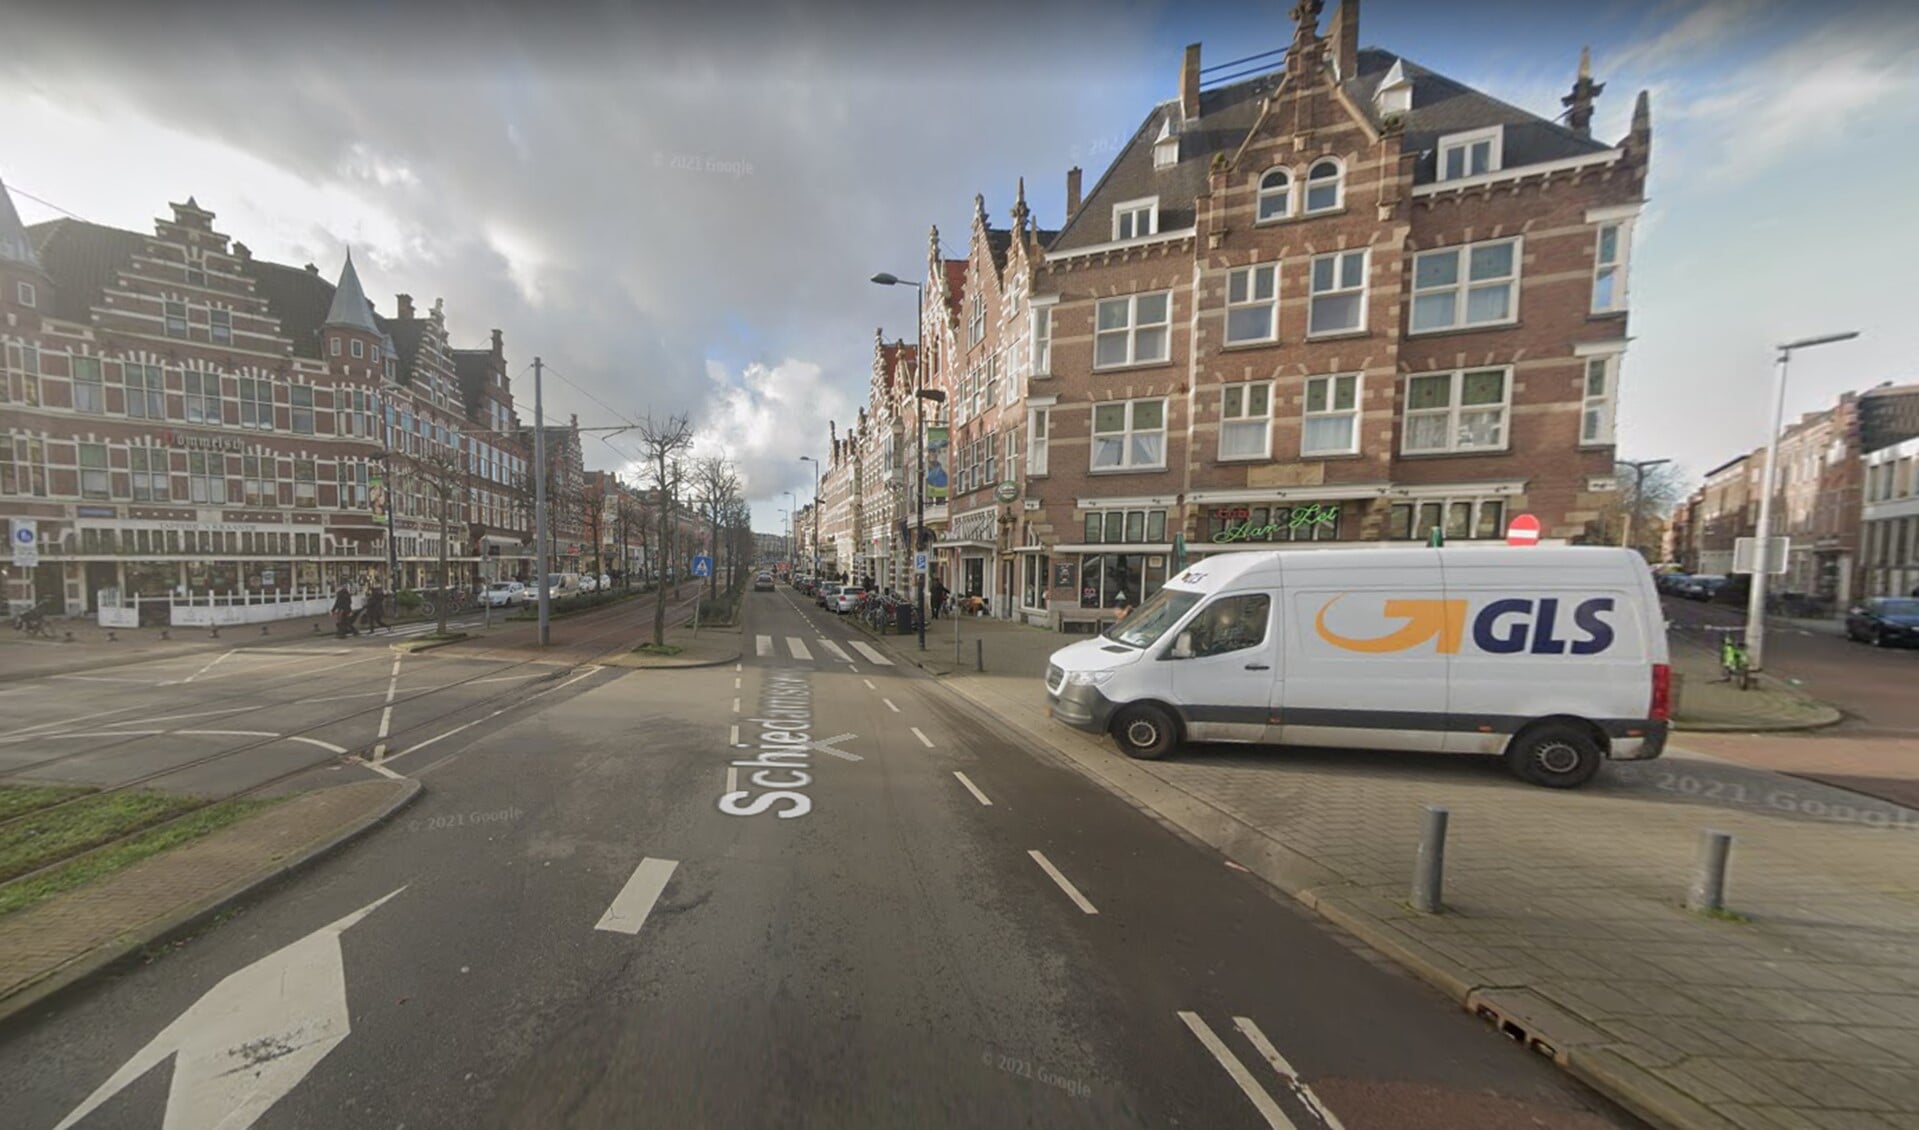 De plek waar de langdurige werkzaamheden in Delfshaven zullen zijn. (Beeld: Google Maps)